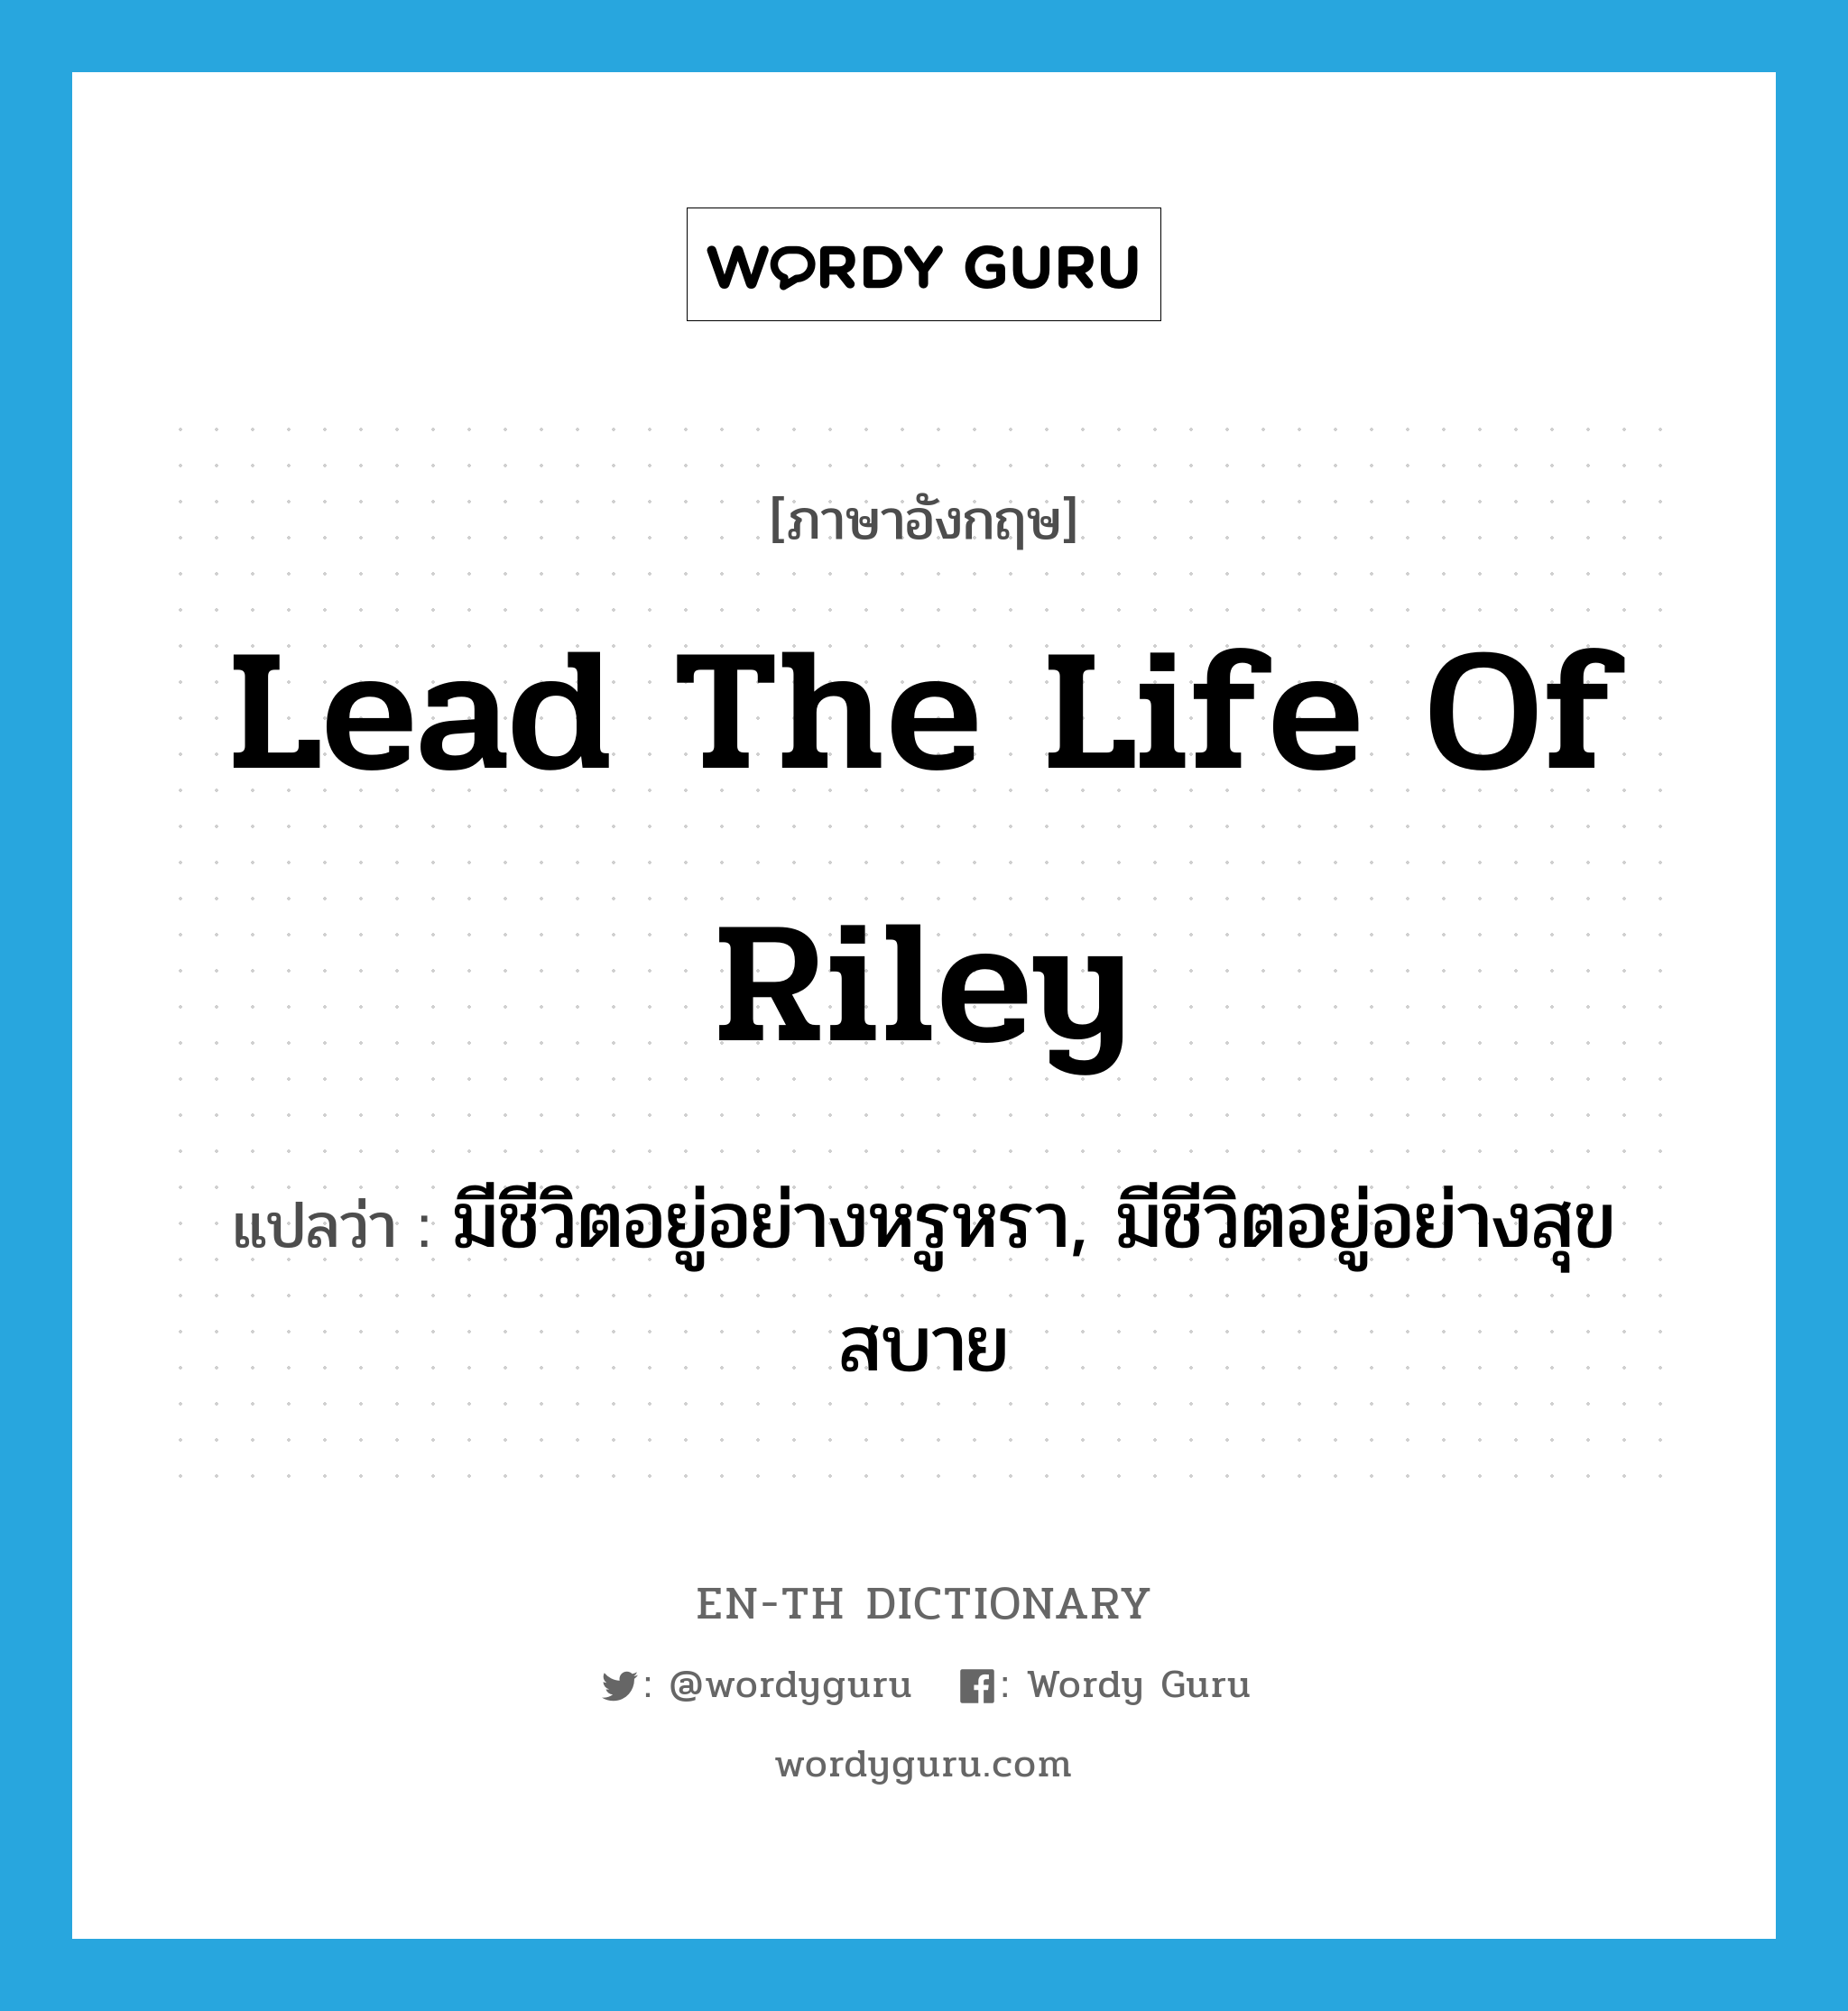 มีชีวิตอยู่อย่างหรูหรา, มีชีวิตอยู่อย่างสุขสบาย ภาษาอังกฤษ?, คำศัพท์ภาษาอังกฤษ มีชีวิตอยู่อย่างหรูหรา, มีชีวิตอยู่อย่างสุขสบาย แปลว่า lead the life of Riley ประเภท IDM หมวด IDM